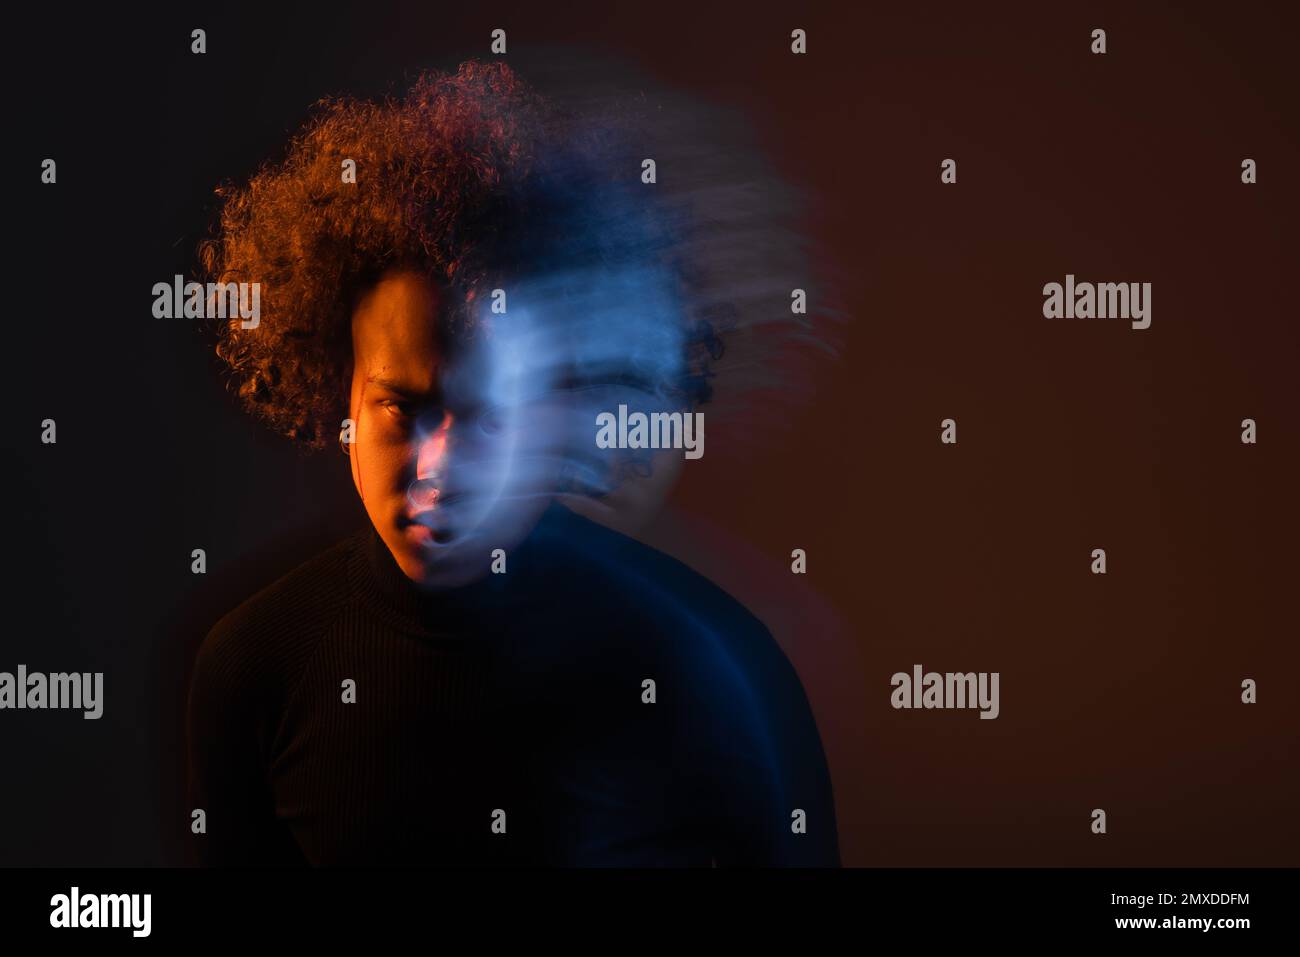 lunga esposizione di afro-americano stressato con disturbo bipolare e faccia sanguinante su sfondo scuro con luce arancione e blu, immagine stock Foto Stock